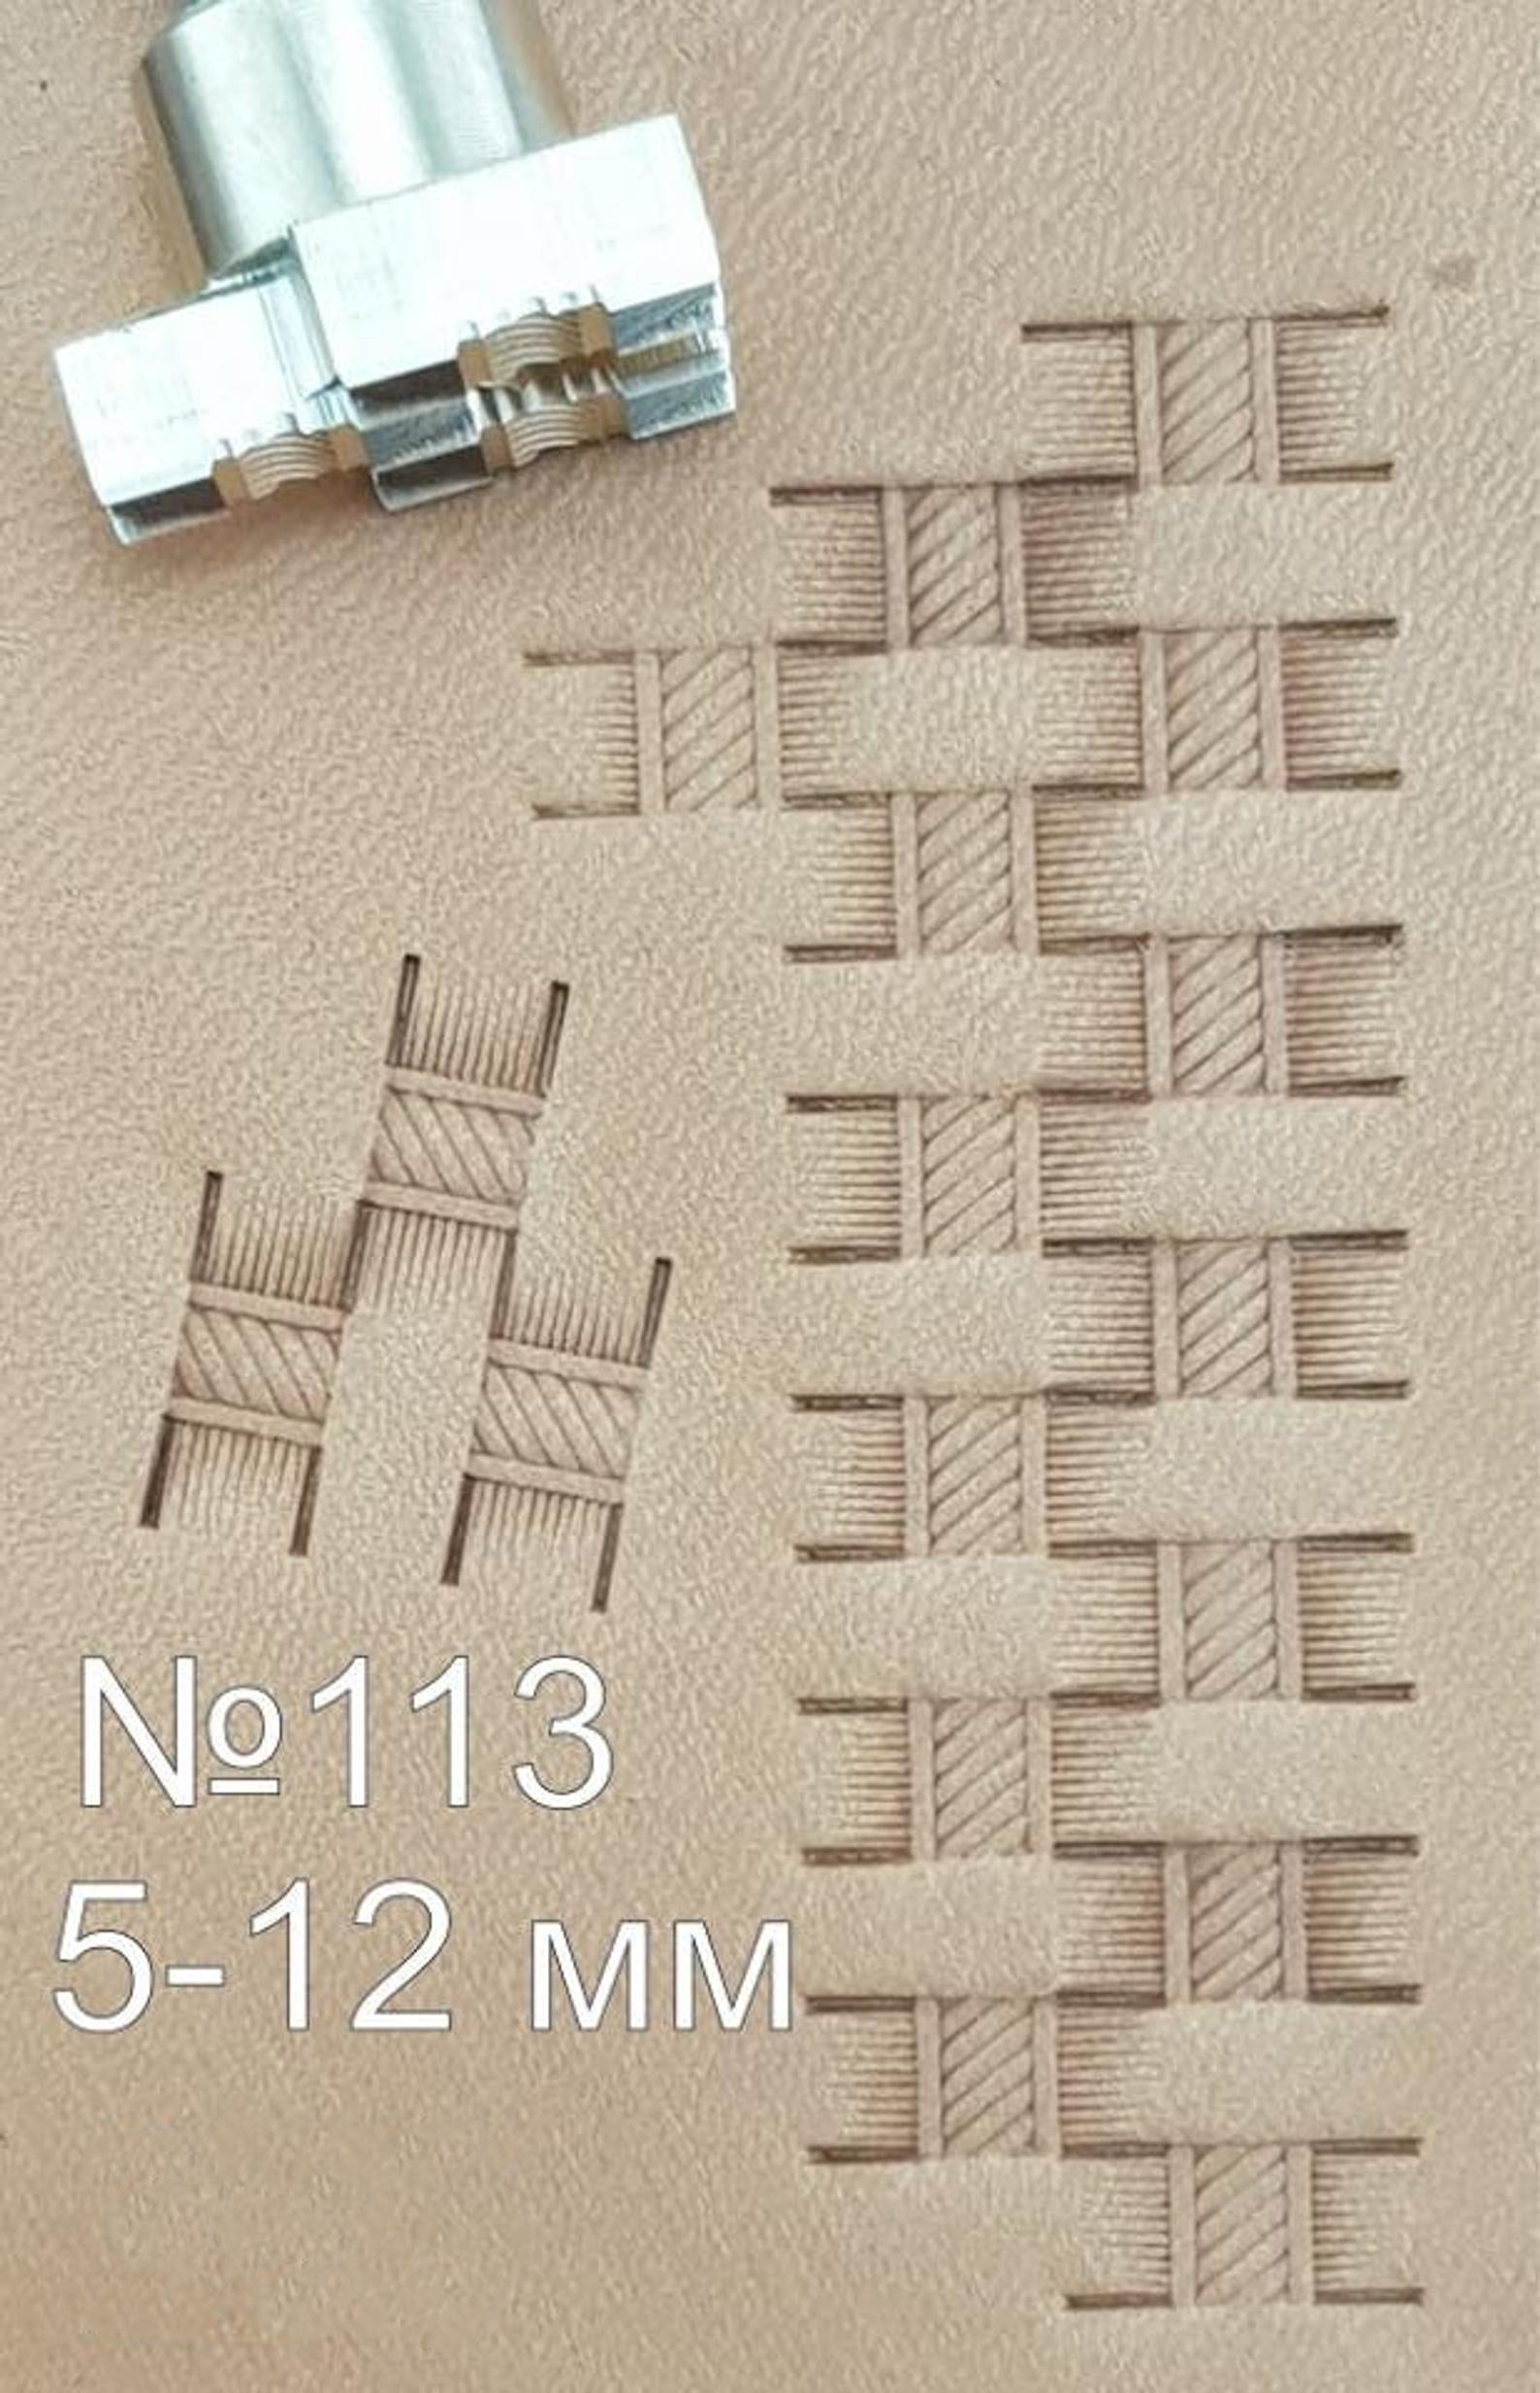 Leather stamp tool #113 - SpasGoranov